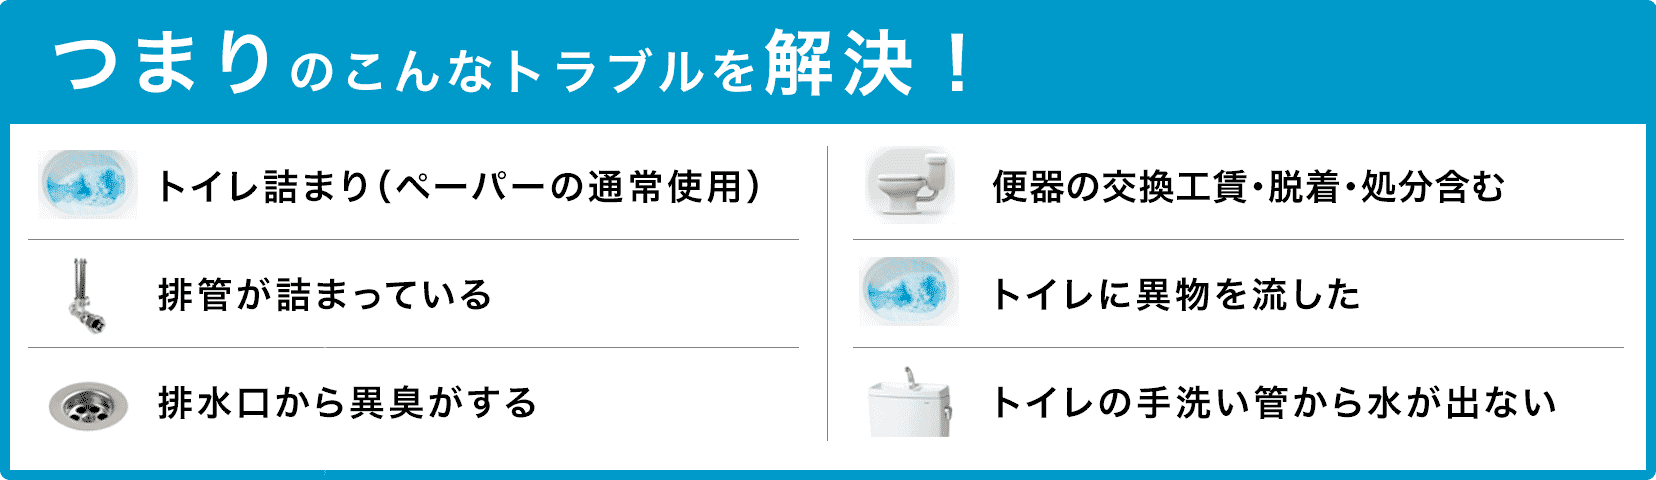 トイレタンクの水が止まらない/トイレタンクから水が出ない/トイレつまり（ペーパーの通常使用)/トイレに異物を流した/便器の交換（工賃のみ)・脱着・処分含む/トイレの手洗い管から水が出ない/ウォッシュレットの取付作業 大阪市西区